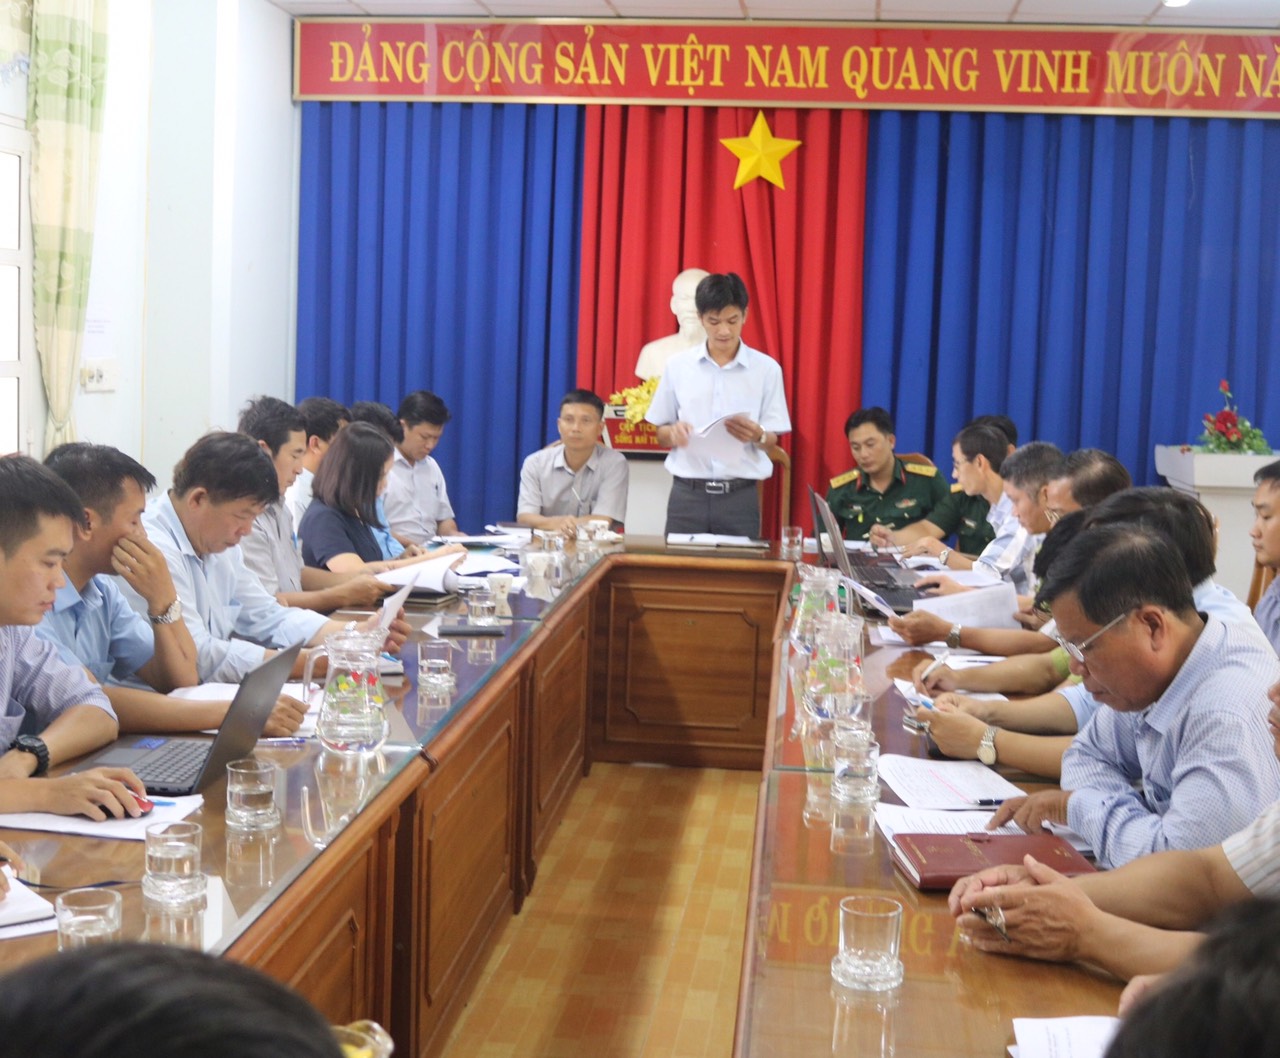 Ảnh: Đồng chí Nguyễn Văn Long, Phó Giám đốc Quỹ BVPTR chủ trì cuộc họp